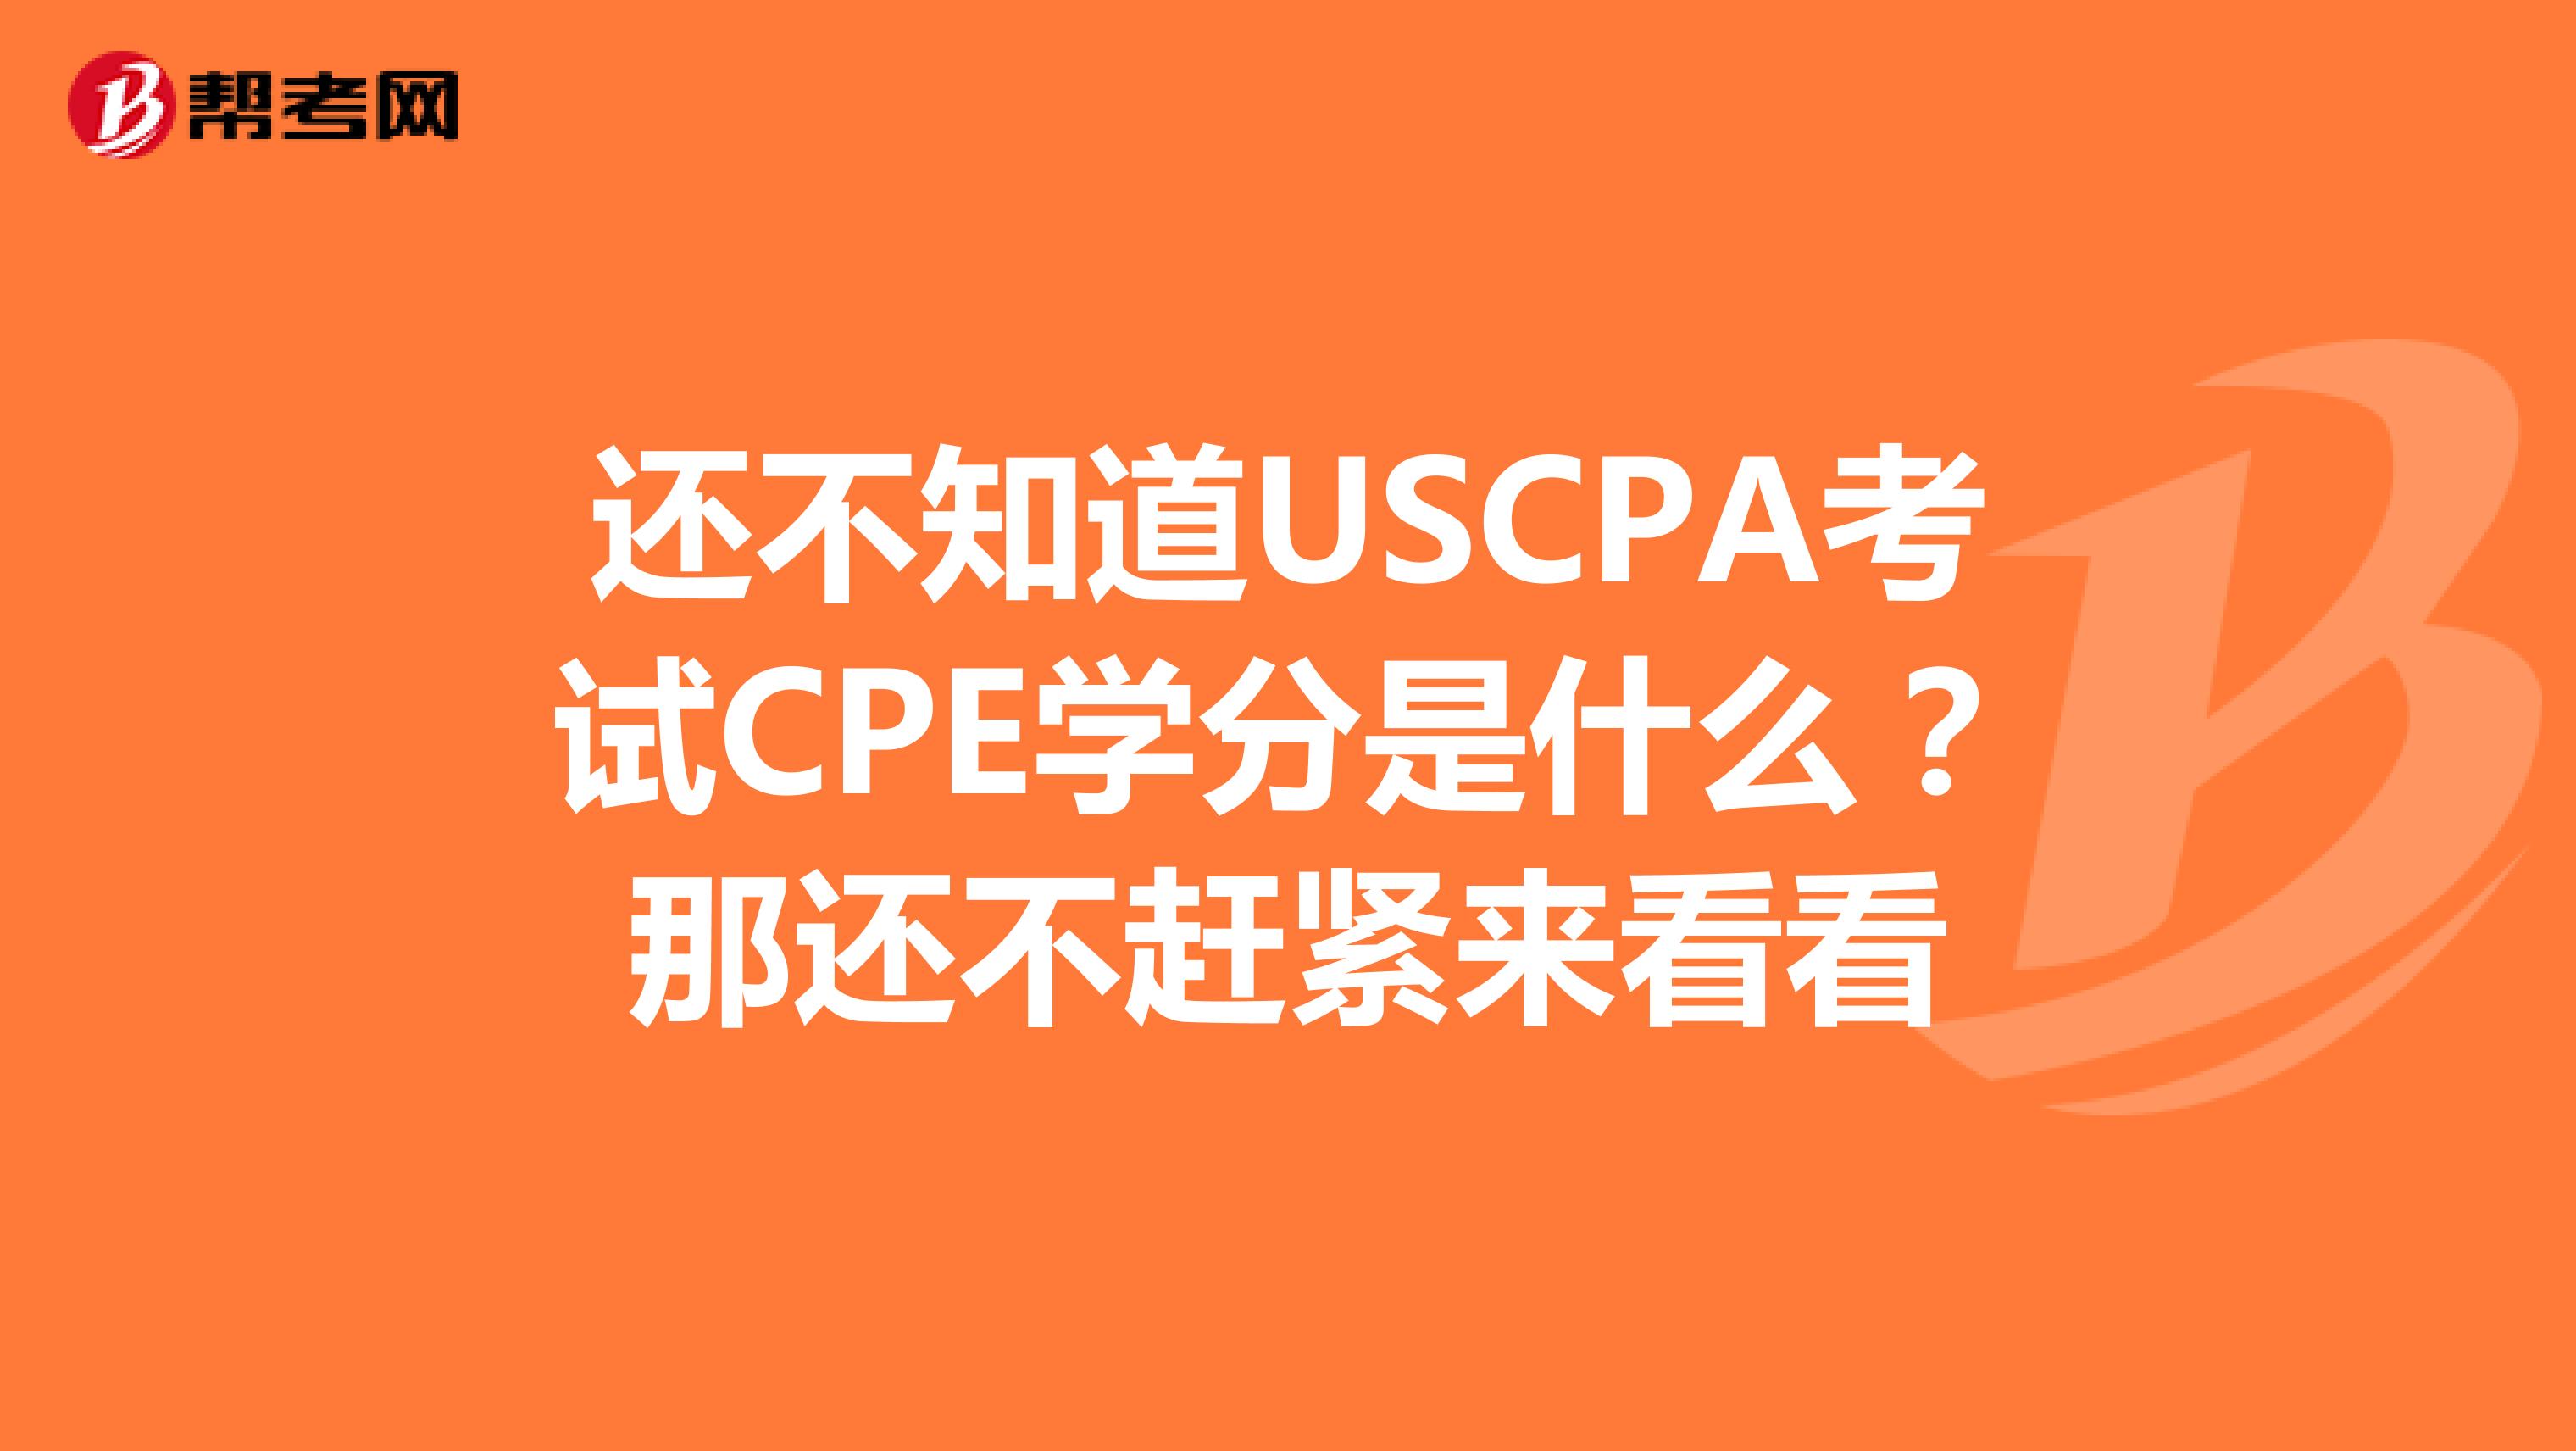 还不知道USCPA考试CPE学分是什么？那还不赶紧来看看